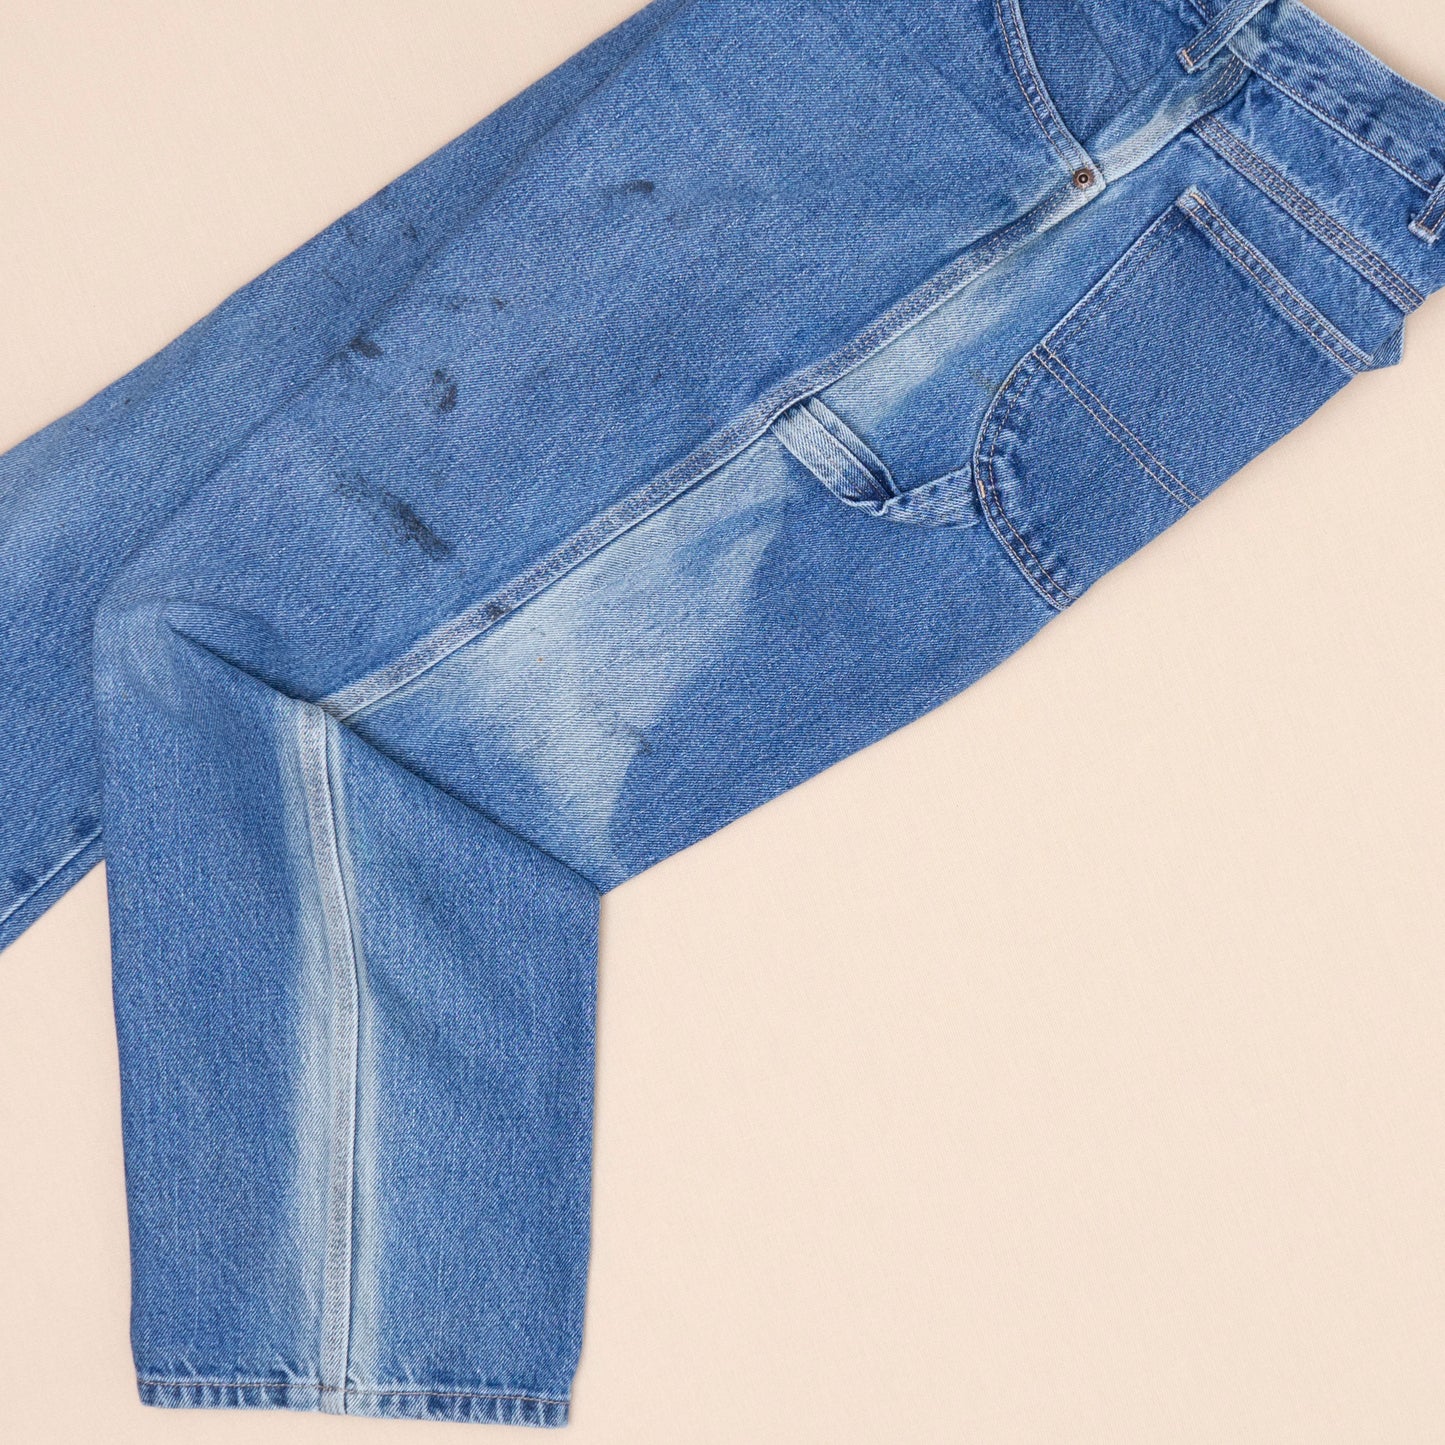 Dickies Carpenter Jeans, W34 L30